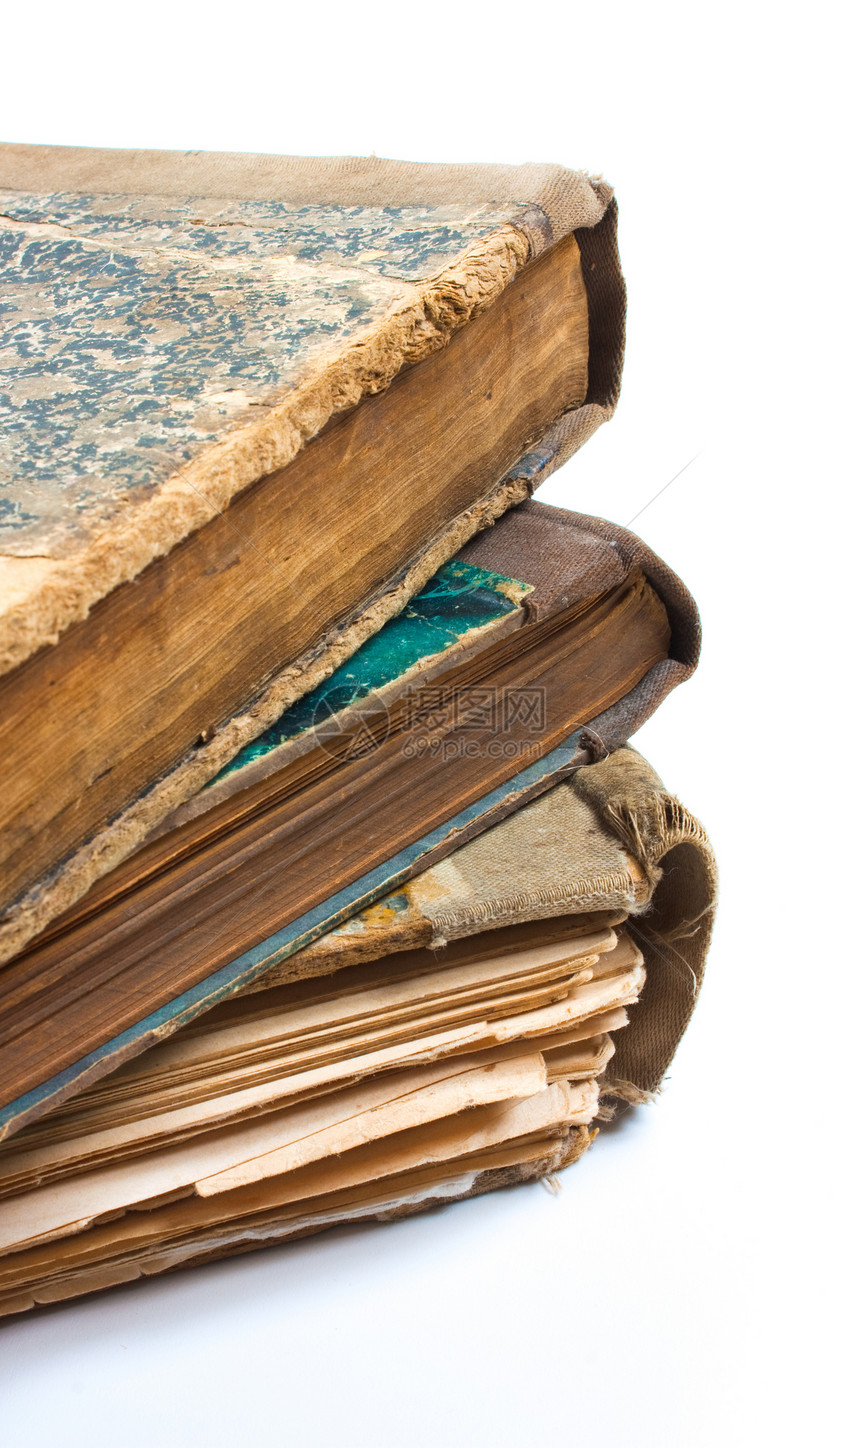 一本旧书 上面印着折叠的床单教育宏观白色古董知识图书馆学习图片